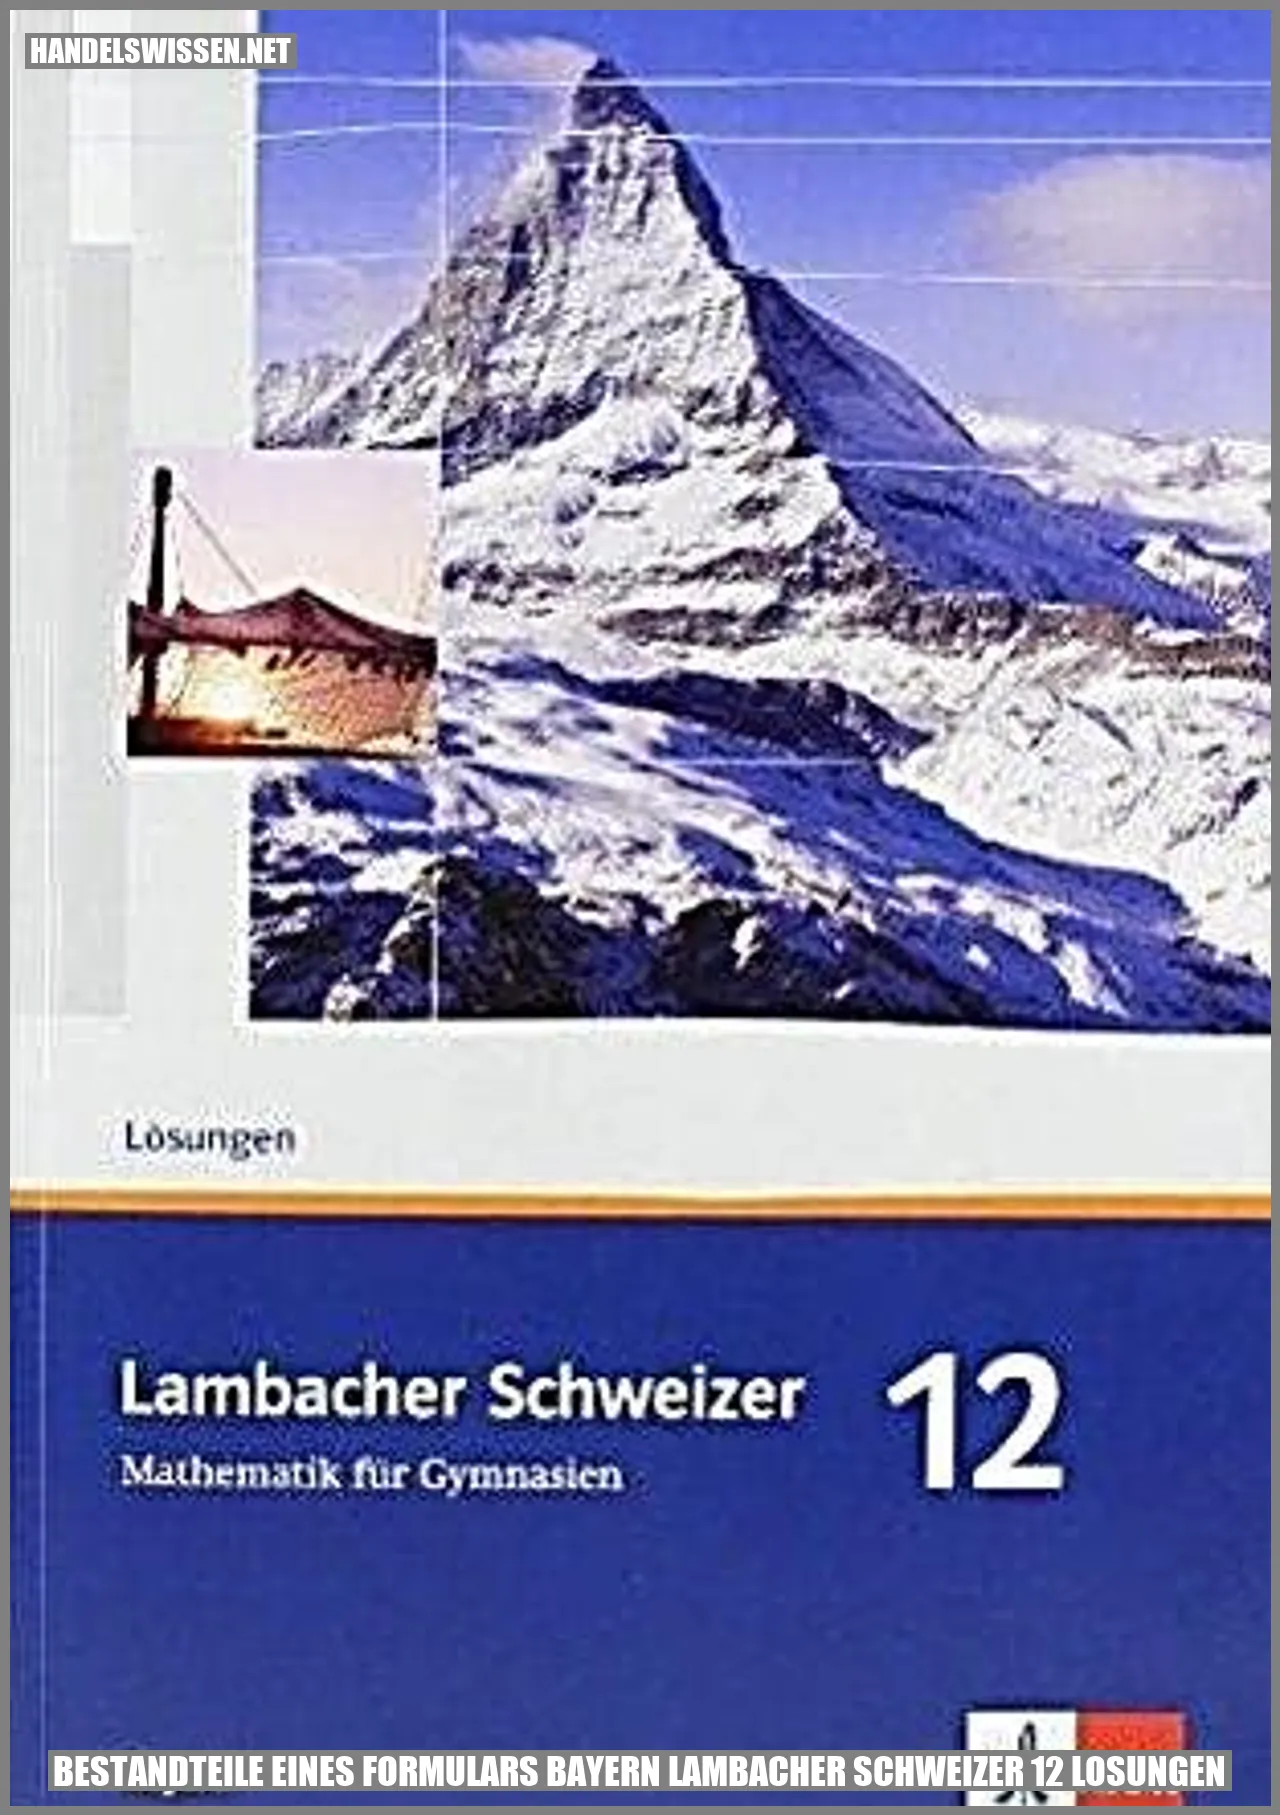 Bestandteile eines Formulars Bayern Lambacher Schweizer 12 Lösungen